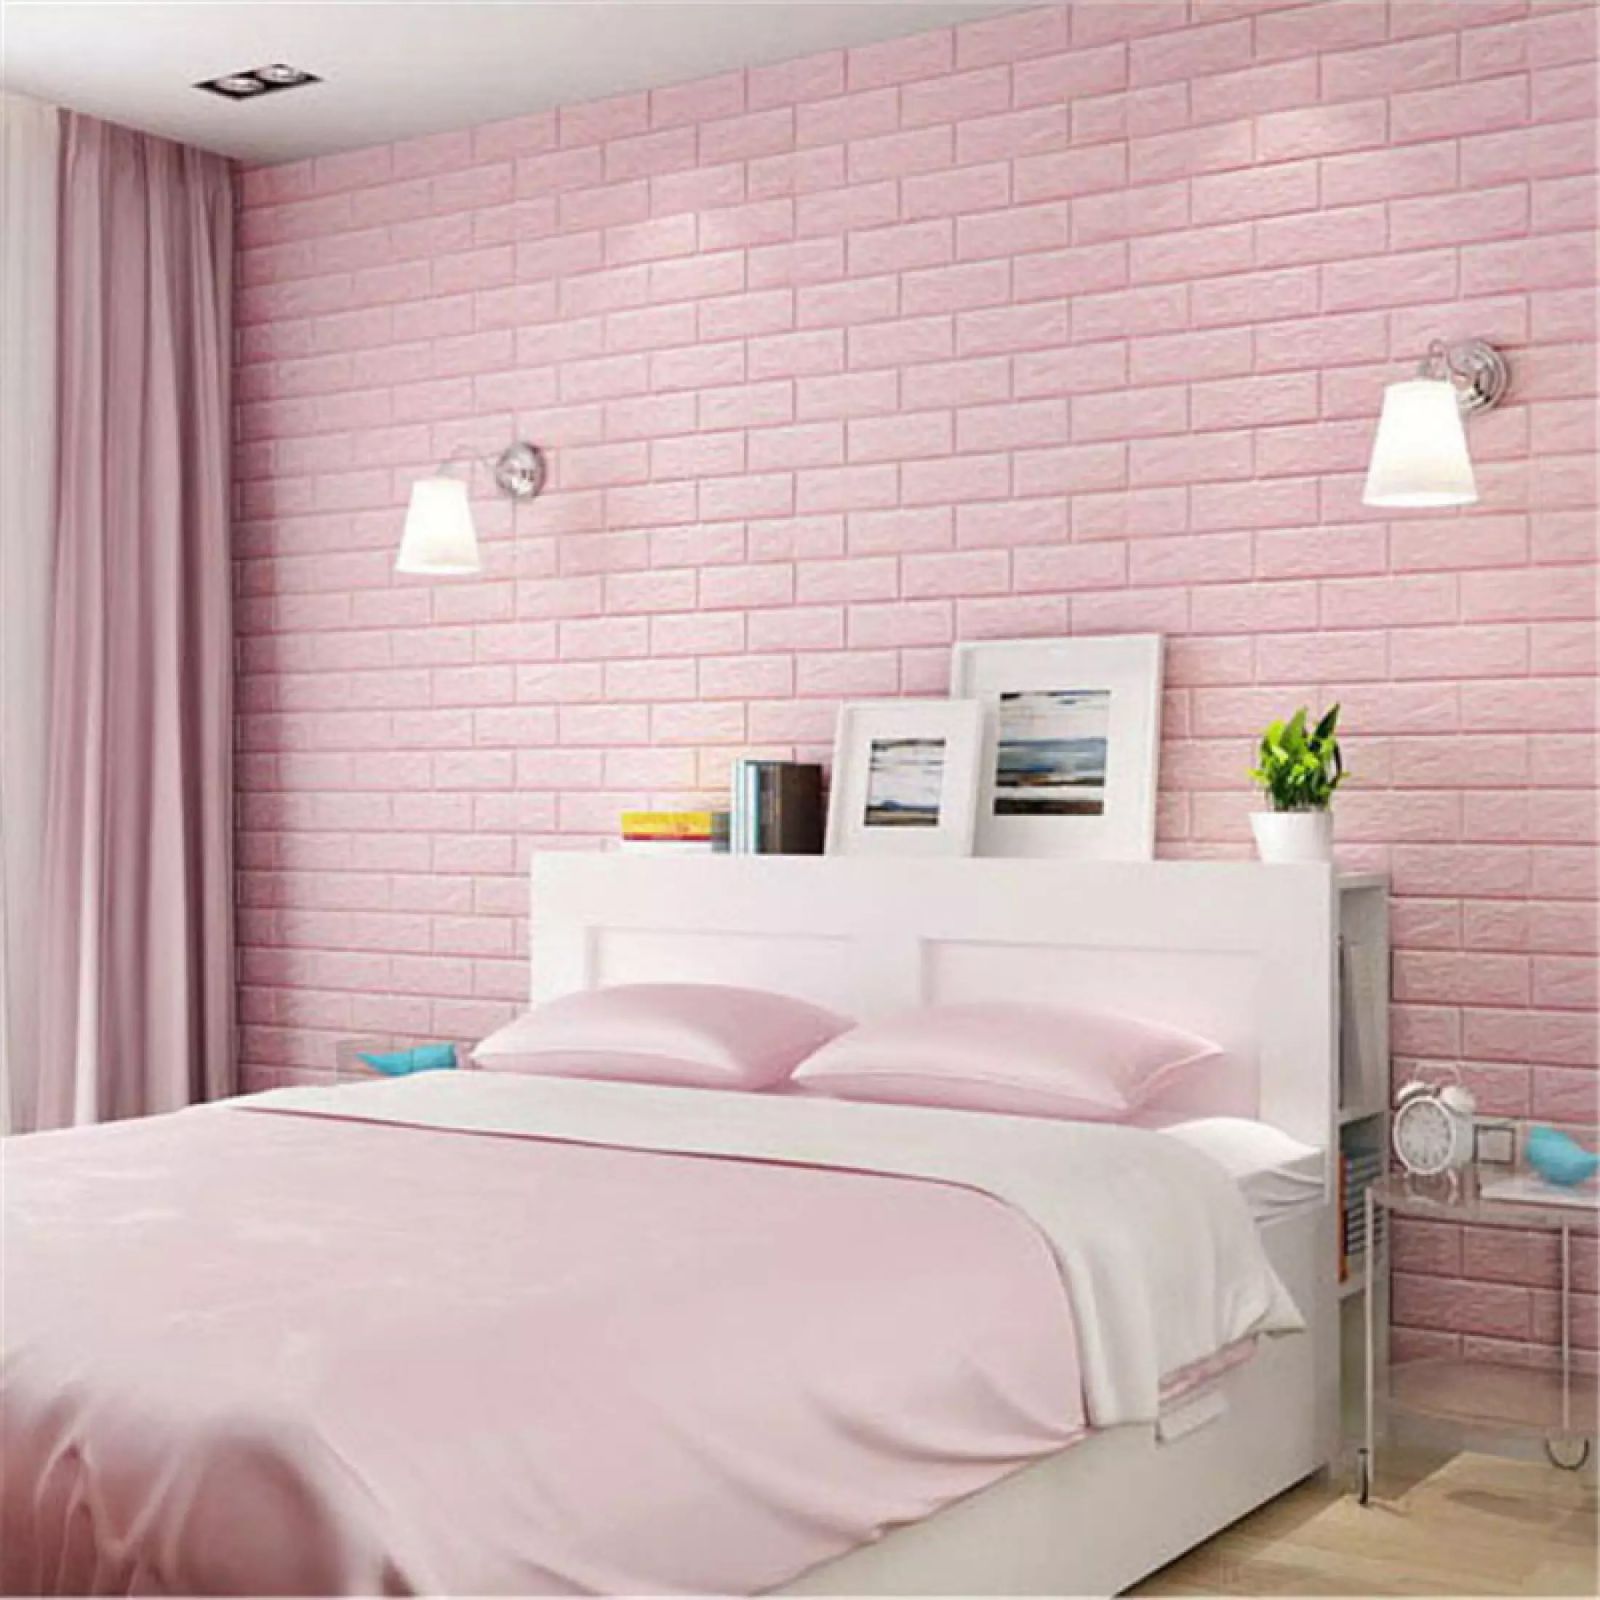 Mẫu trang trí phòng ngủ màu hồng đơn giản